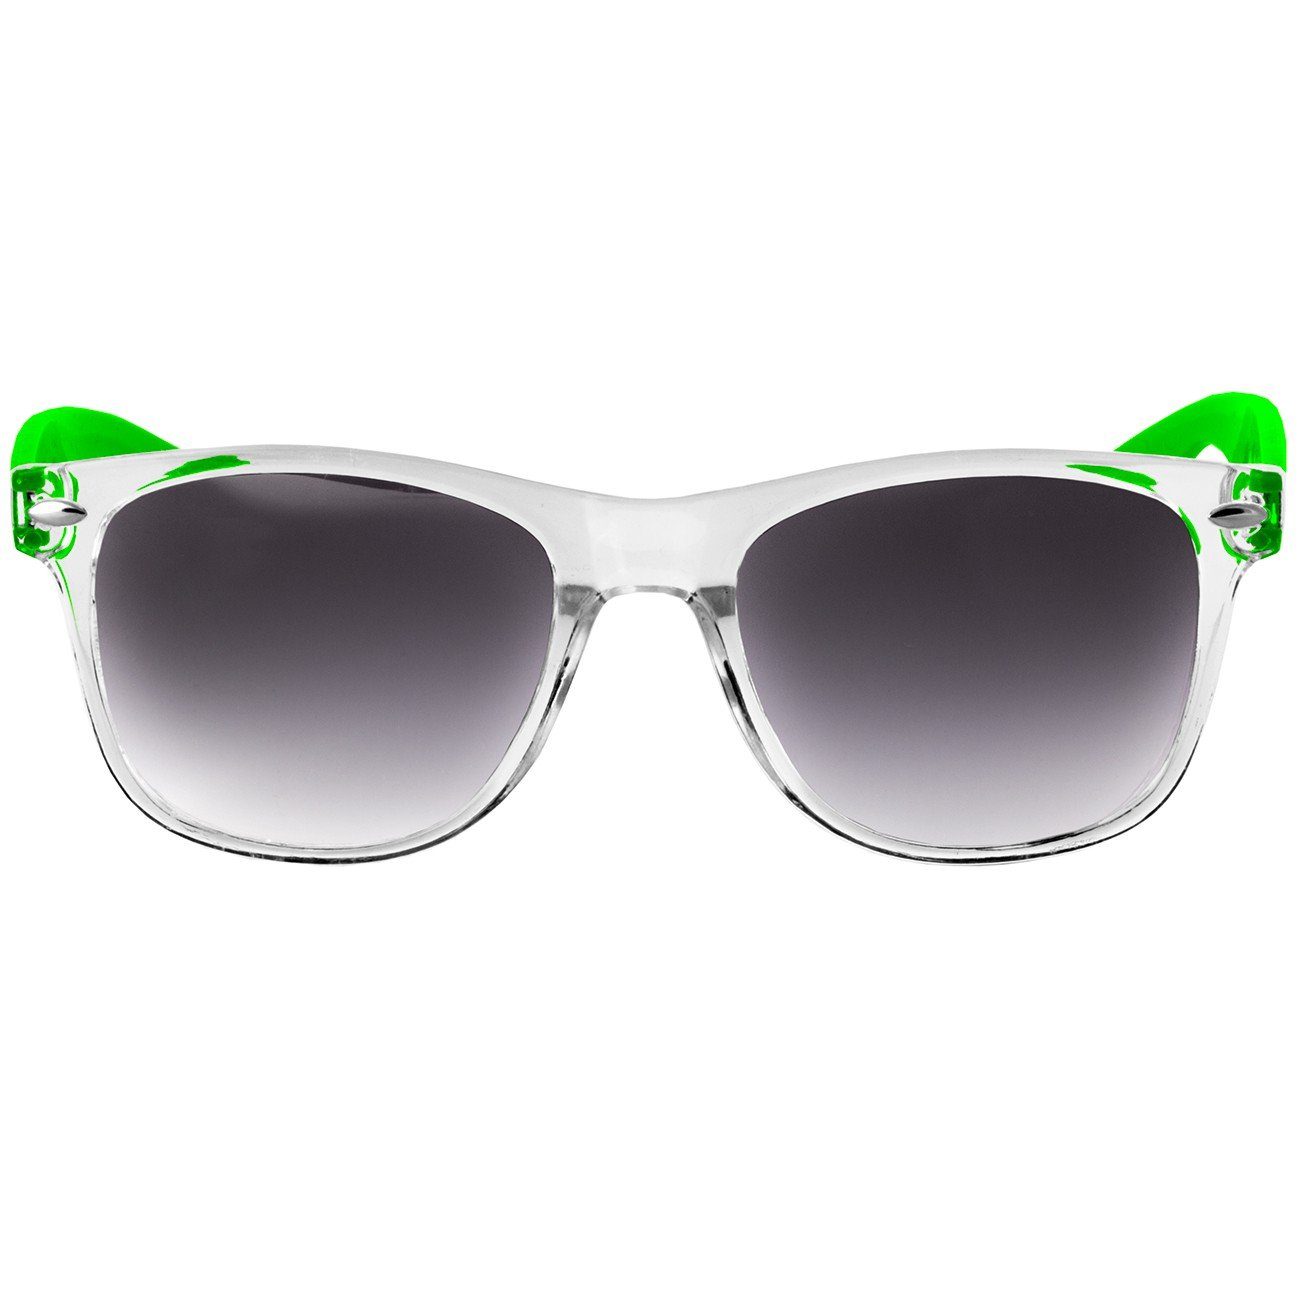 Damen getönt Caspar RETRO / SG017 schwarz Sonnenbrille Designbrille grün